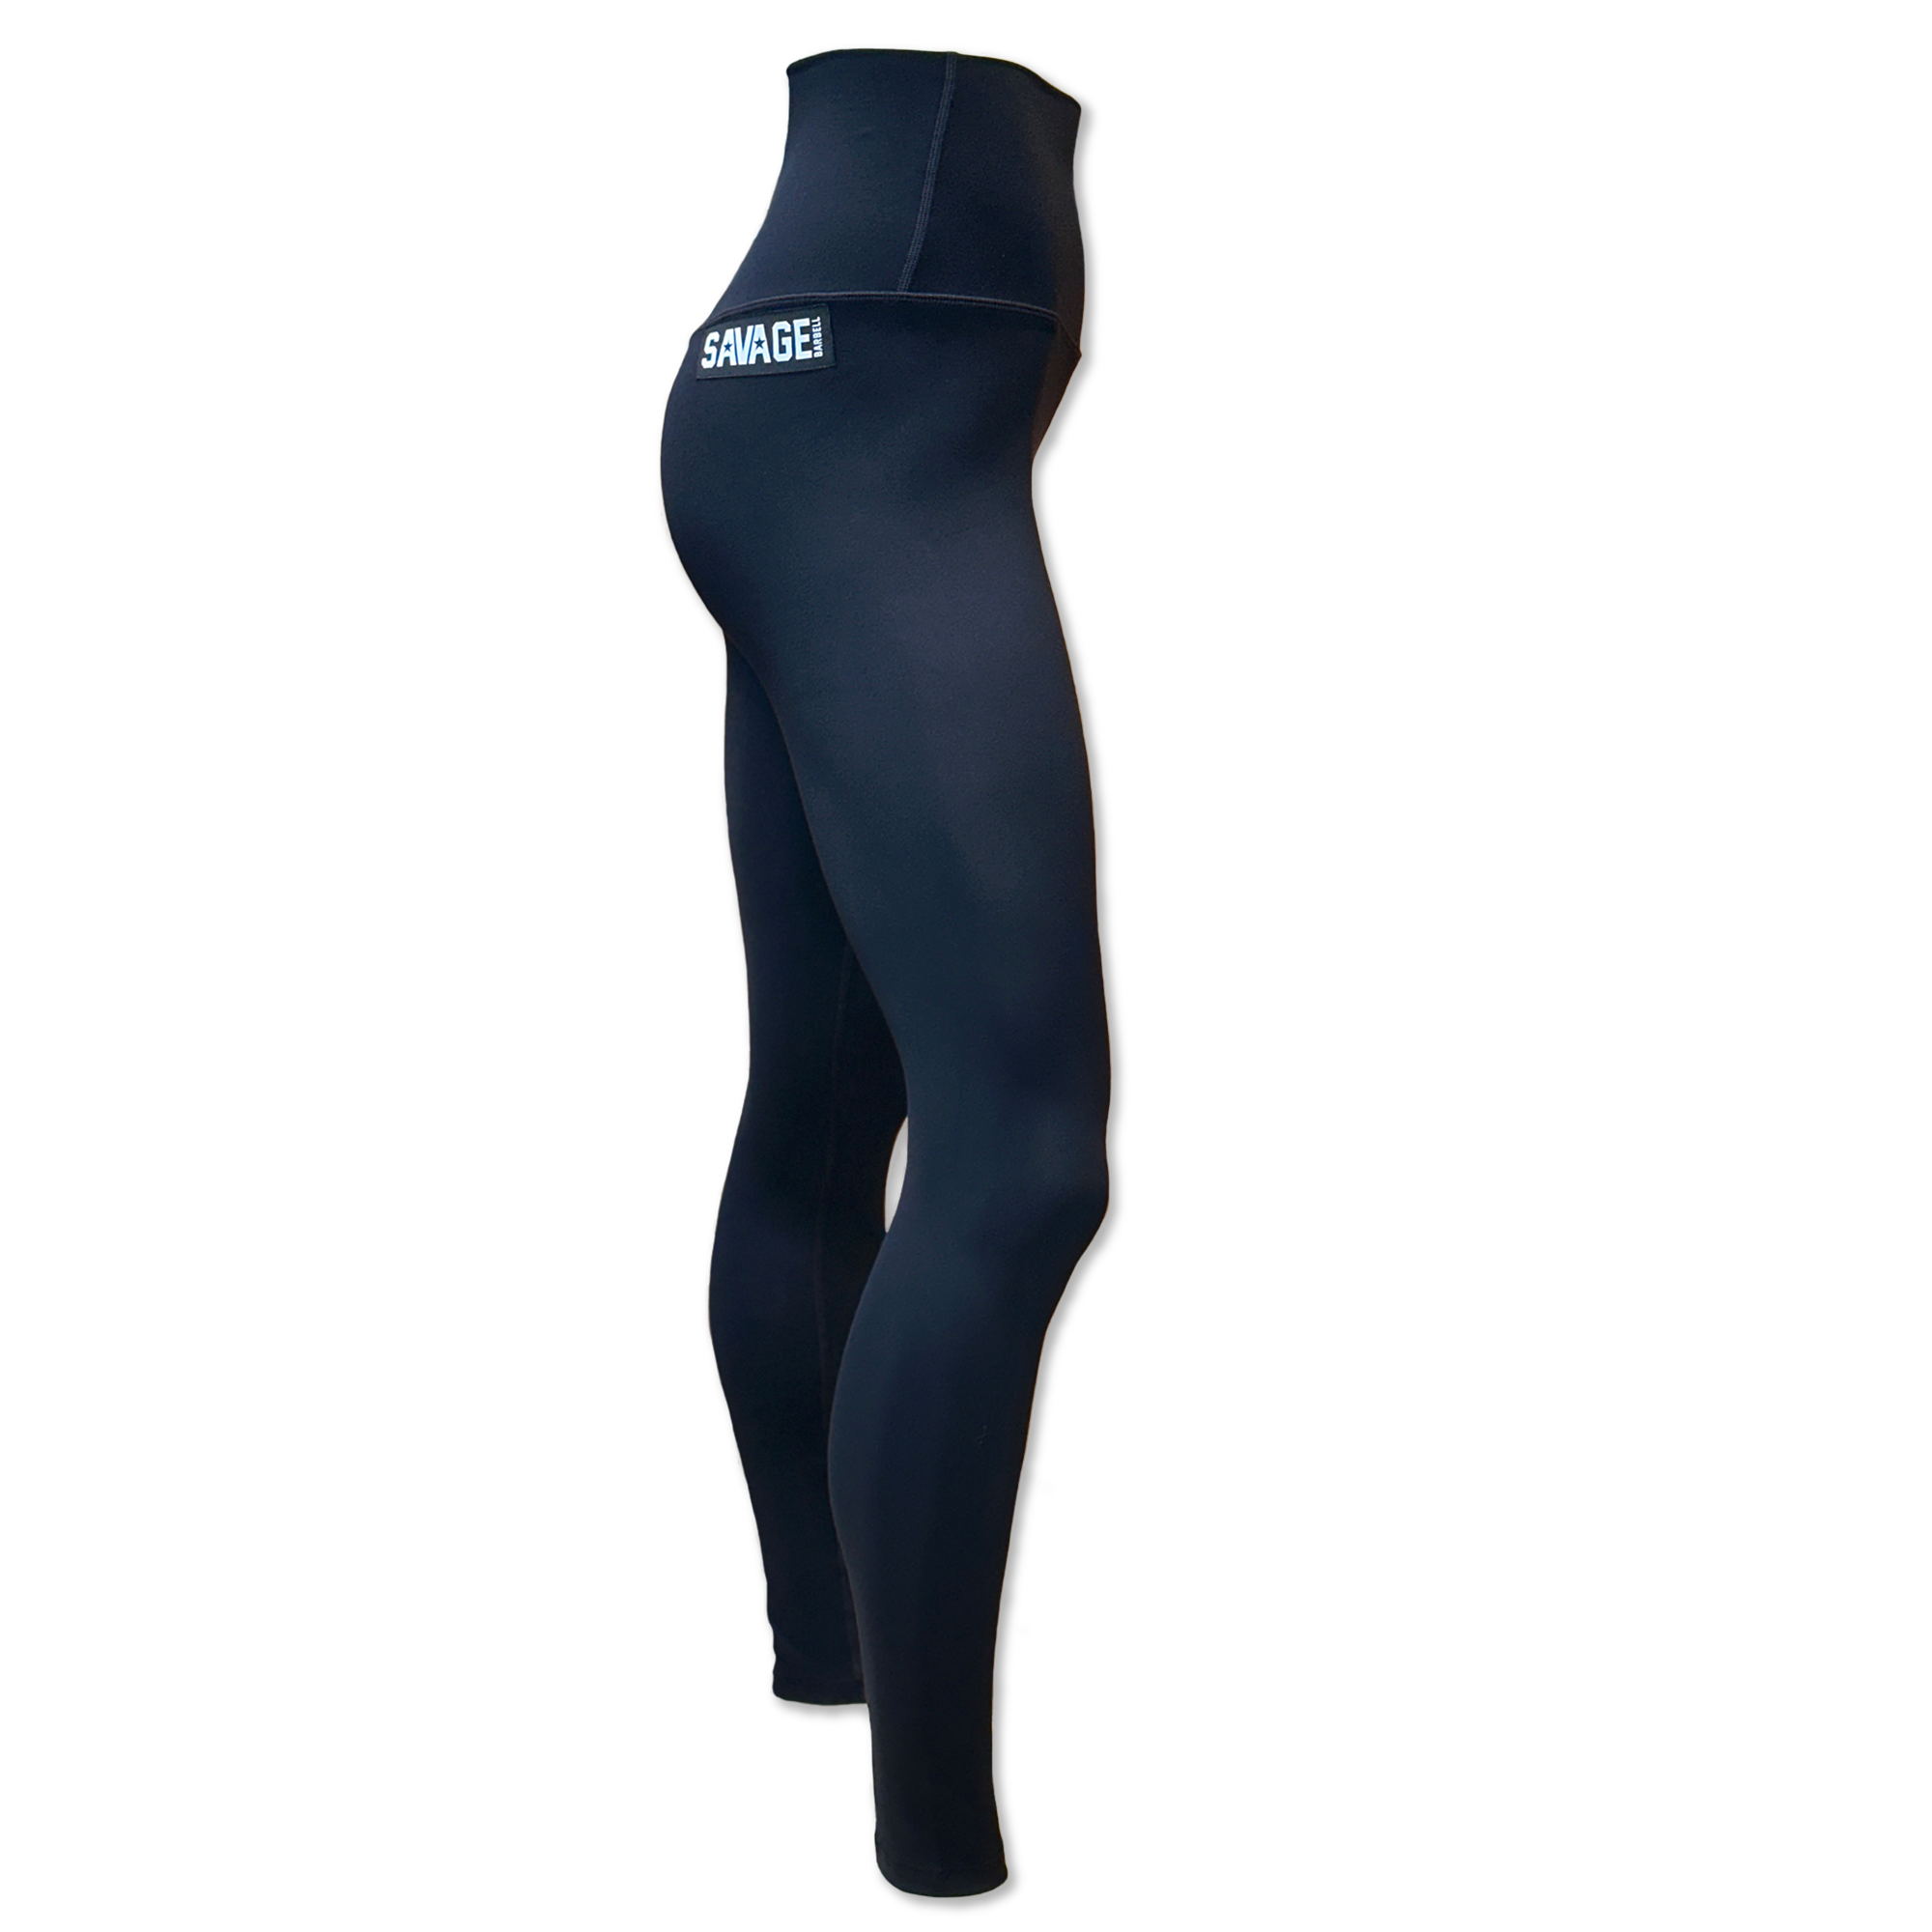 Butt Scrunch High Waist Slim Fit Ankle Length Leggings Womens Size Medium  Black | eBay